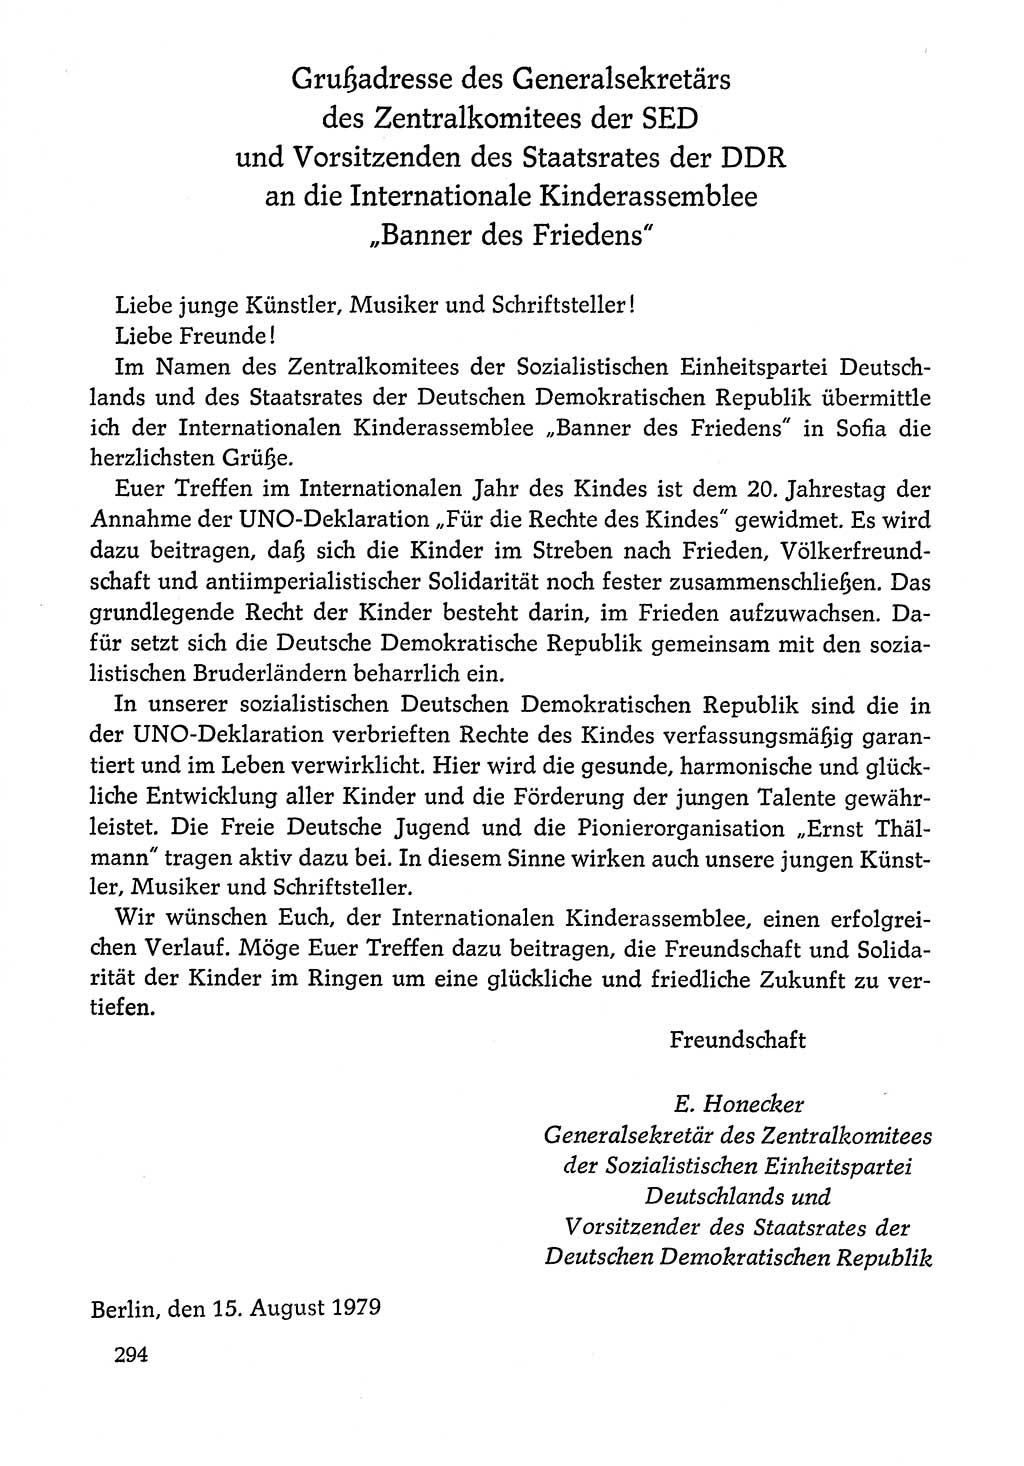 Dokumente der Sozialistischen Einheitspartei Deutschlands (SED) [Deutsche Demokratische Republik (DDR)] 1978-1979, Seite 294 (Dok. SED DDR 1978-1979, S. 294)